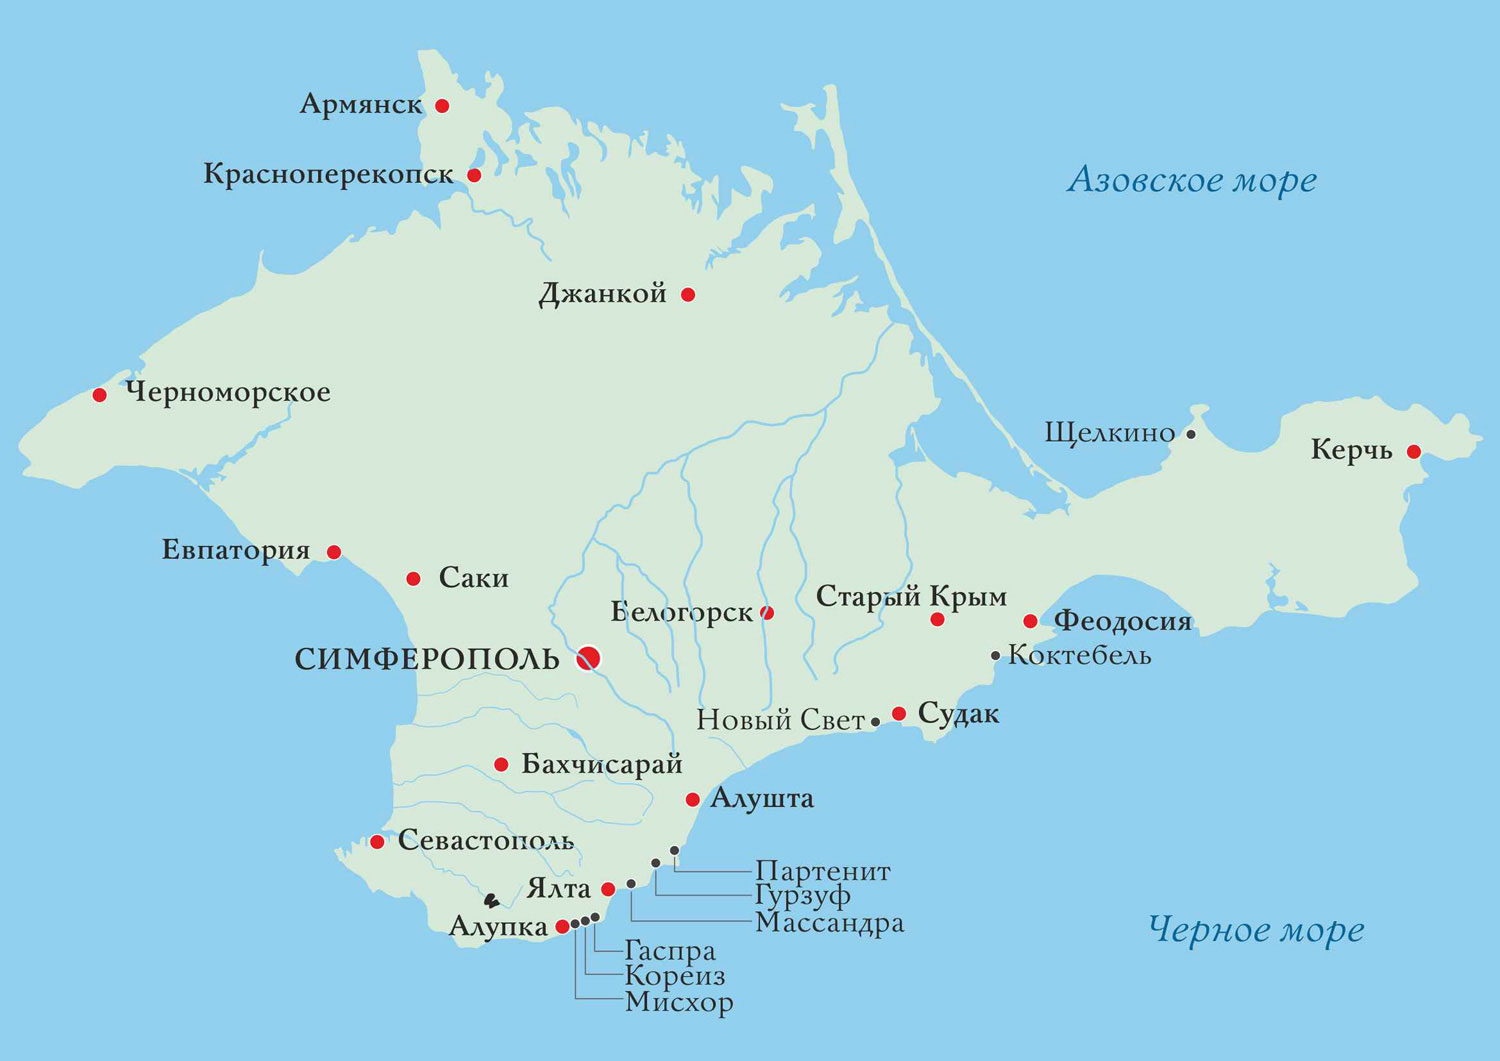 Поселки на побережье крыма